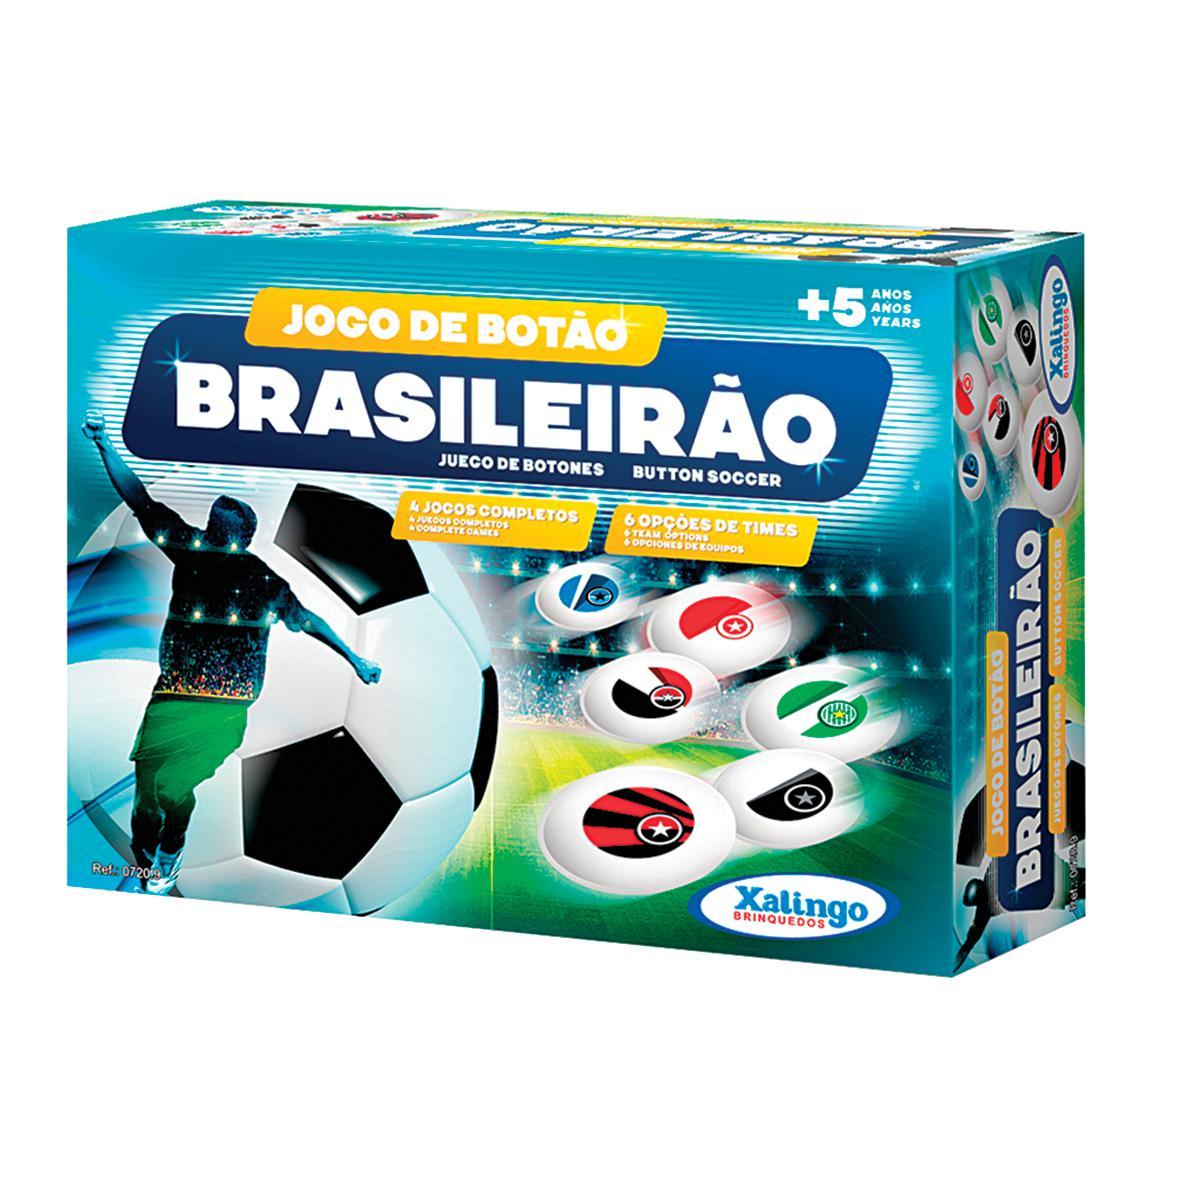 Jogo de Botão Brasileirão Xalingo 0720.9